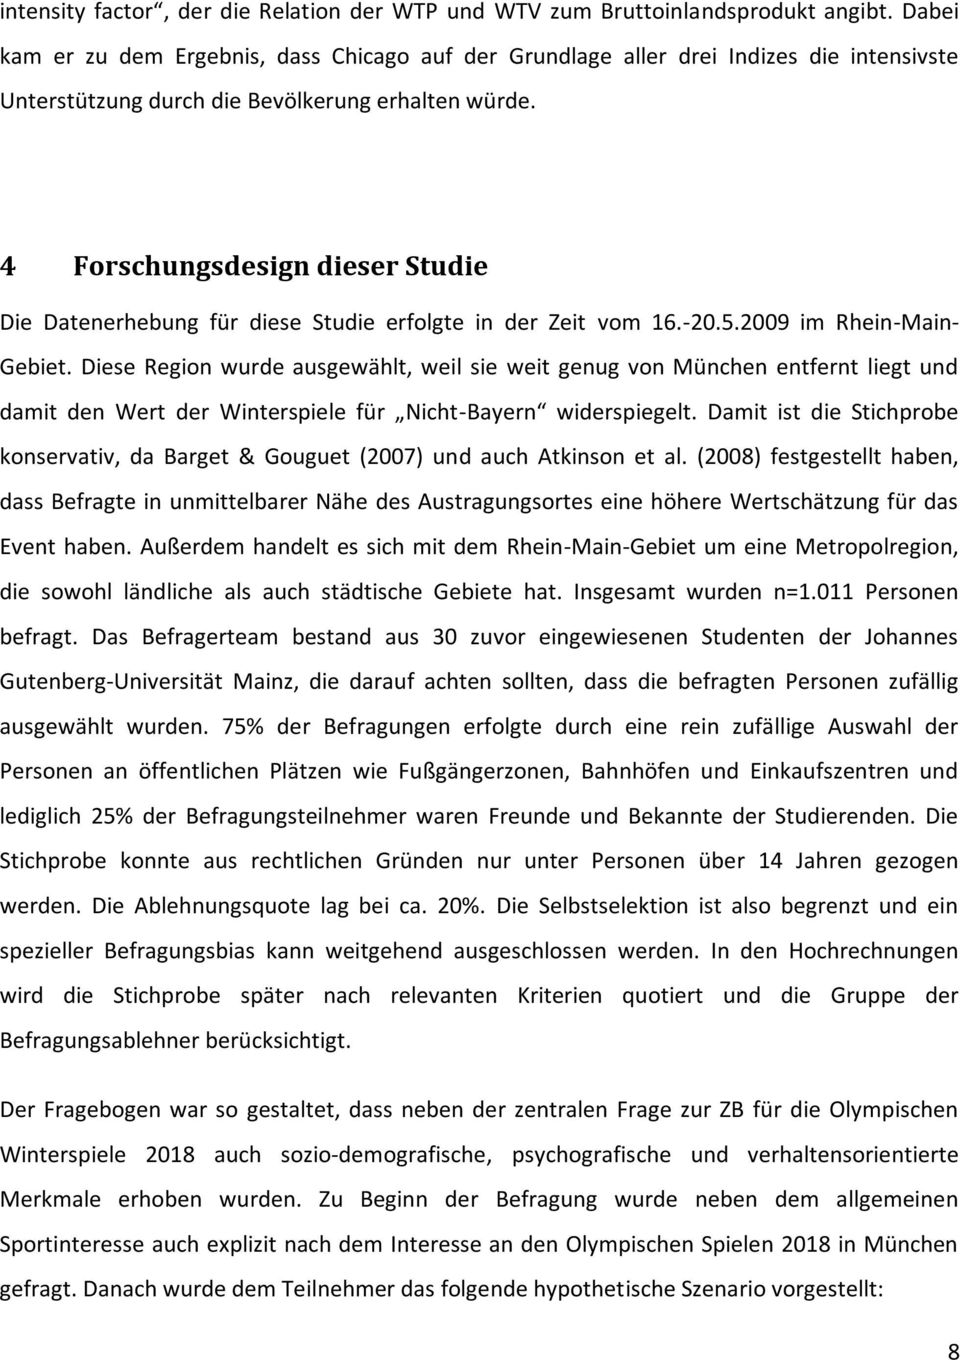 4 Forschungsdesign dieser Studie Die Datenerhebung für diese Studie erfolgte in der Zeit vom 16.-20.5.2009 im Rhein-Main- Gebiet.